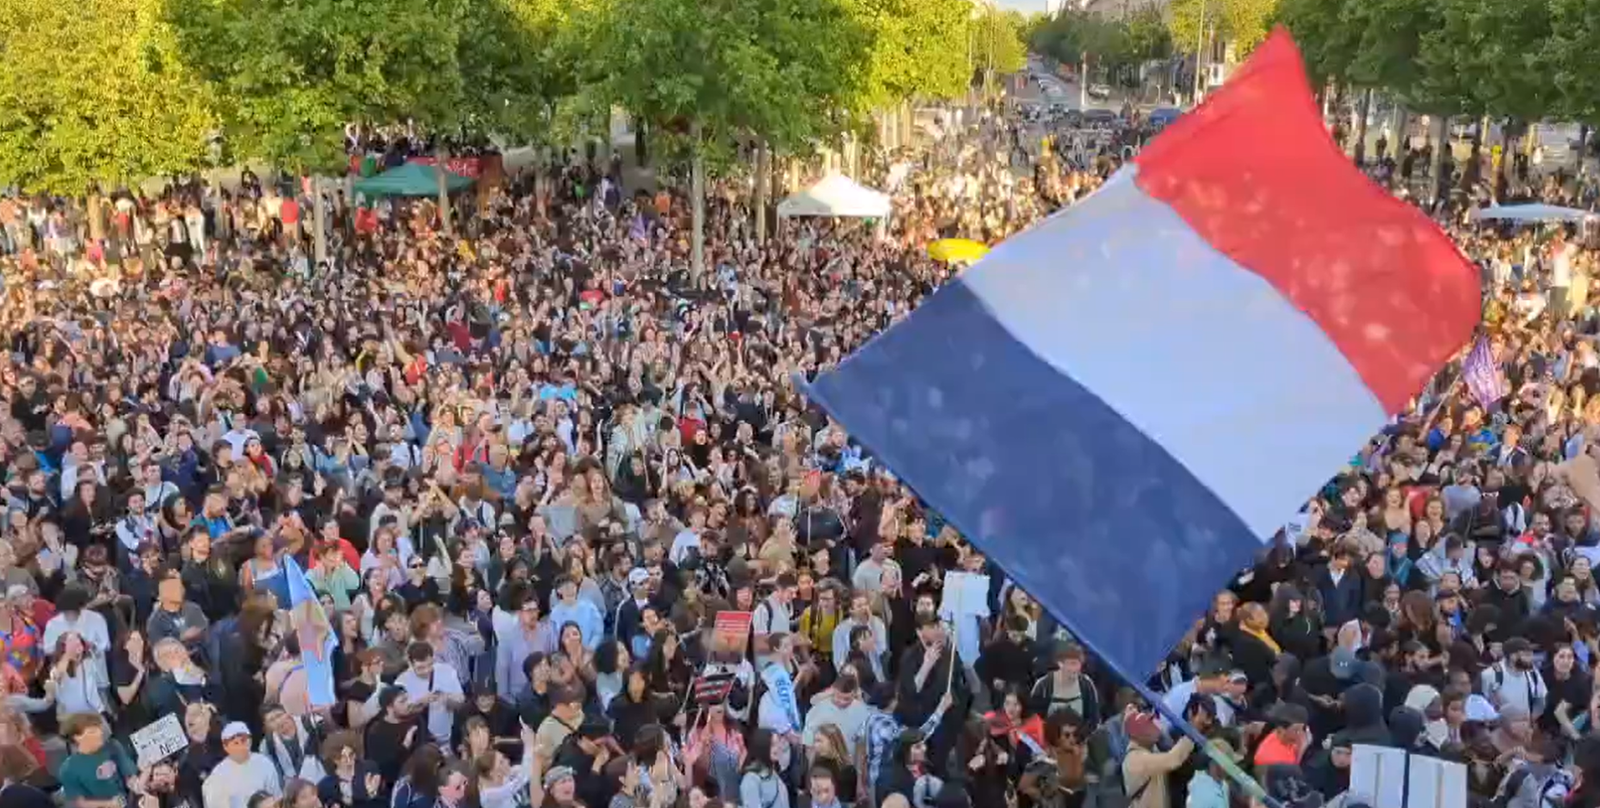 Eleitores celebram vitória de aliança de esquerda na França. Crédito: LucAuffret, reprodução X